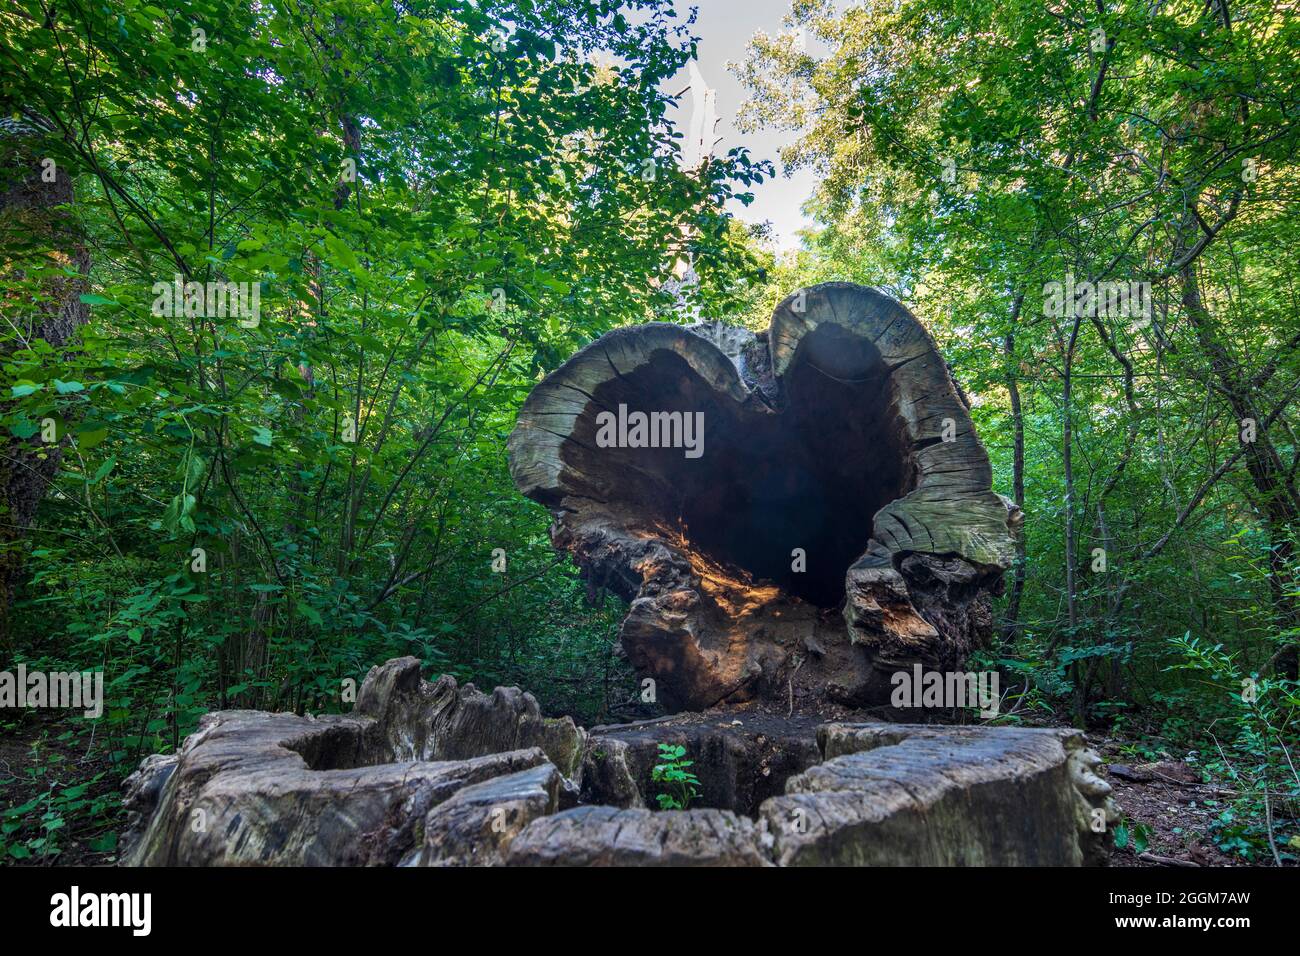 Vienne, arbre tombé avec une transe en forme de coeur à Lobau, une partie du parc national Donau-Auen (Parc national du Danube-Auen) en 22. Donaustadt, Vienne, Autriche Banque D'Images